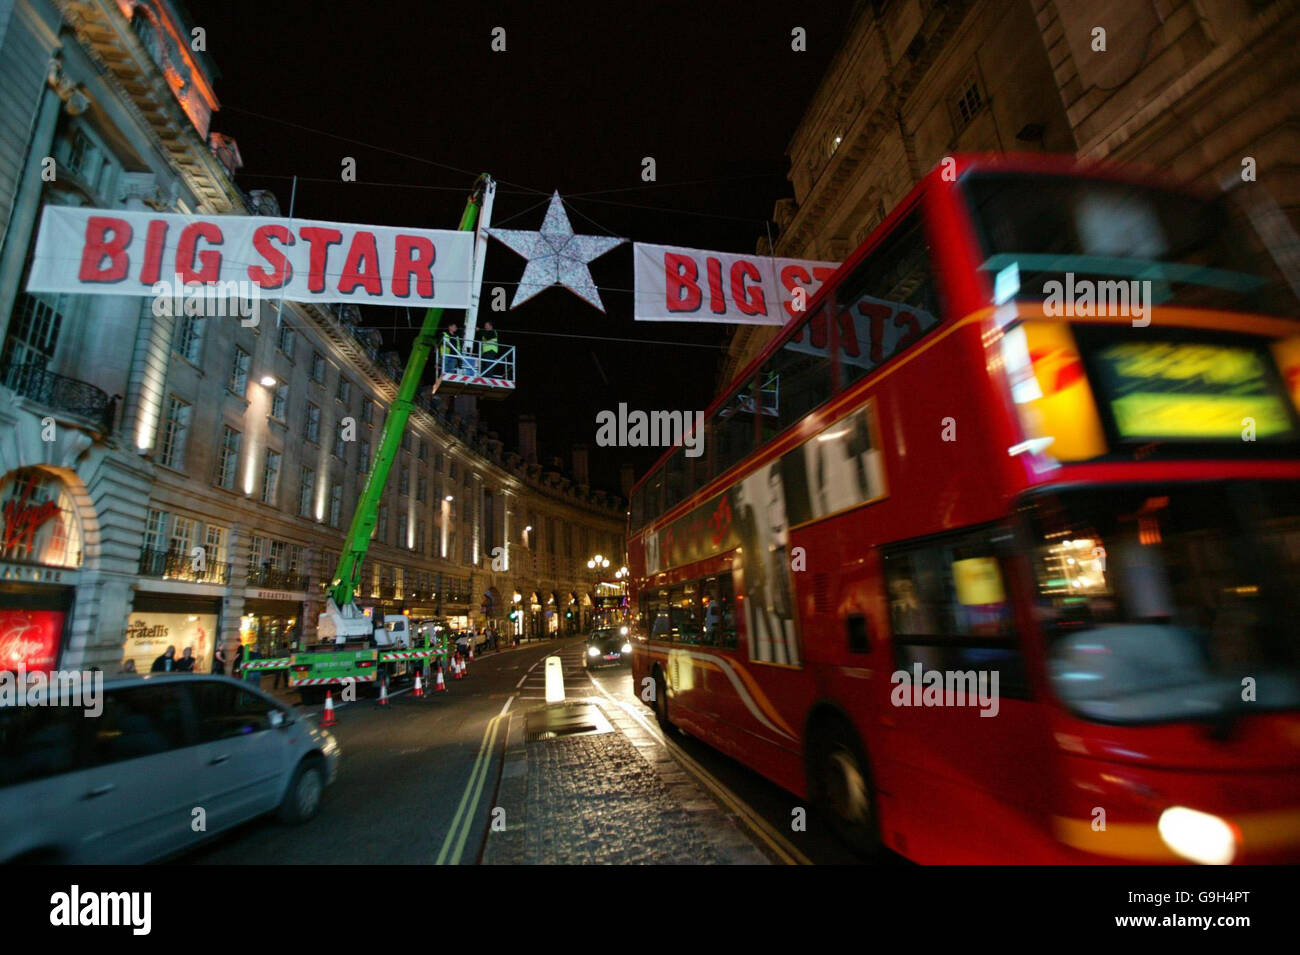 La Virgin radio Big Star, contenant une somme non divulguée de l'argent papier de Virgin radio Big Star, est suspendue au-dessus de Regent Street, dans le centre de Londres. Banque D'Images